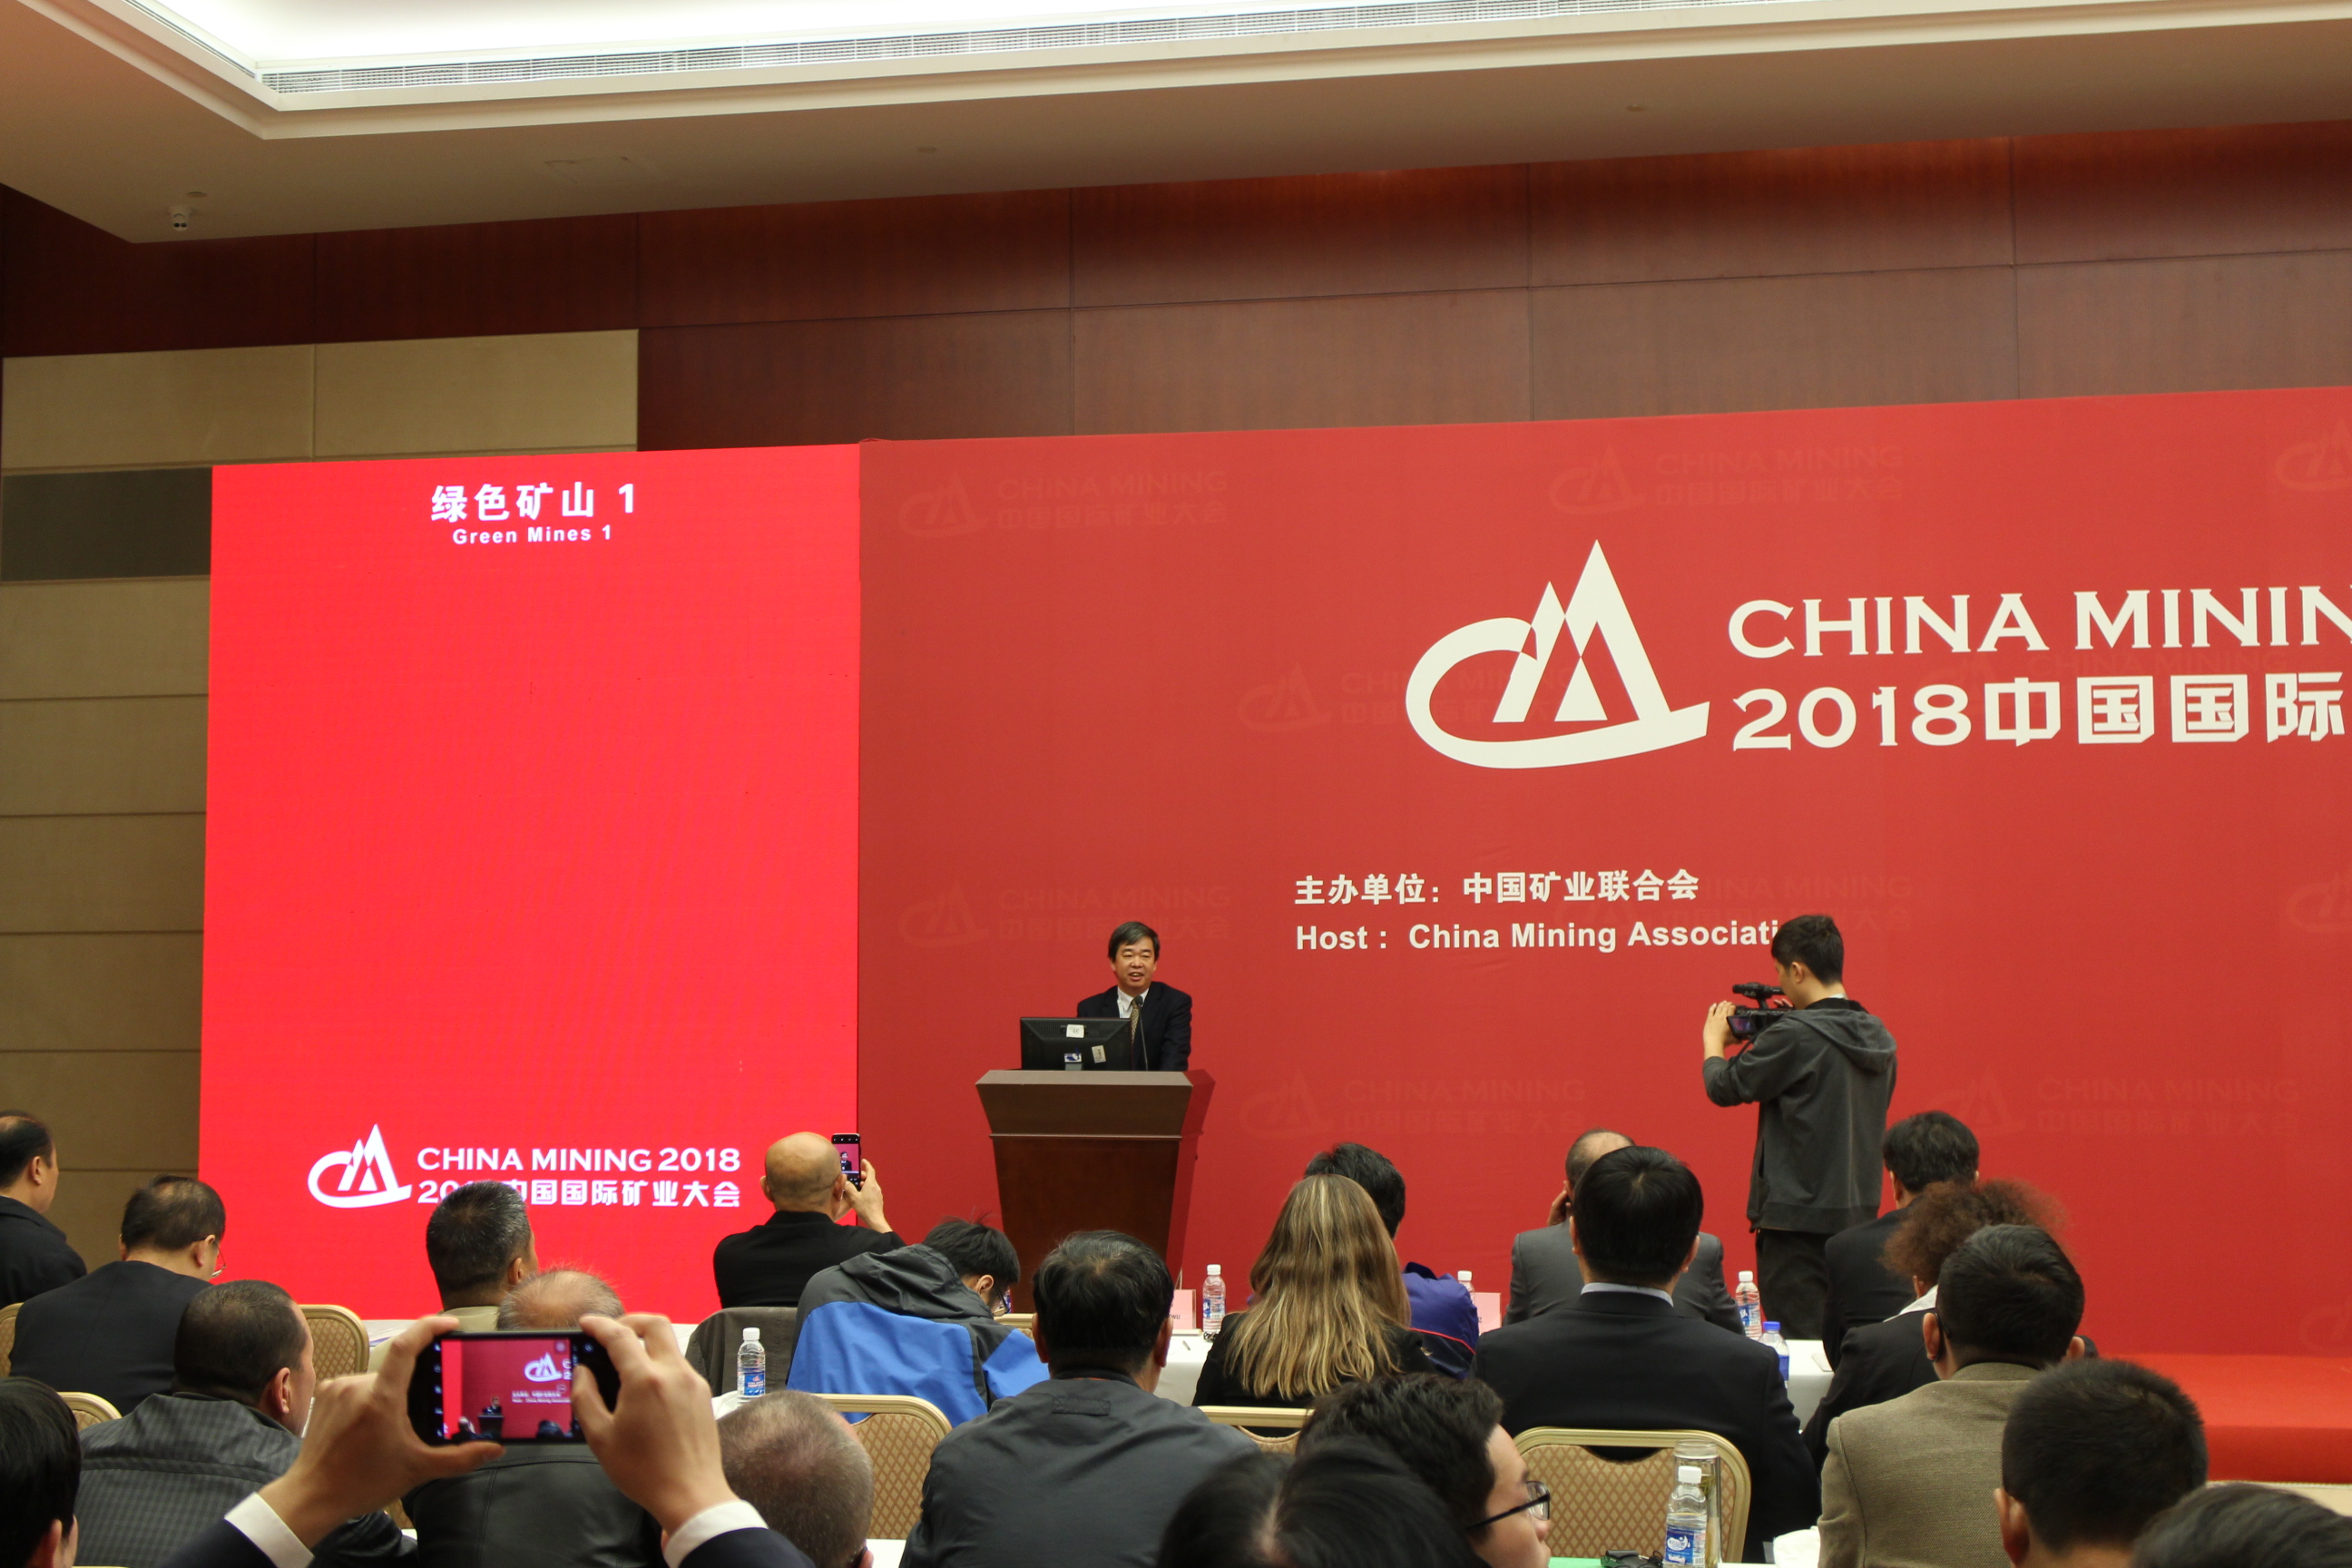 提要：11月的第一优发国际个周六2013中国国际矿业大会再次如期与